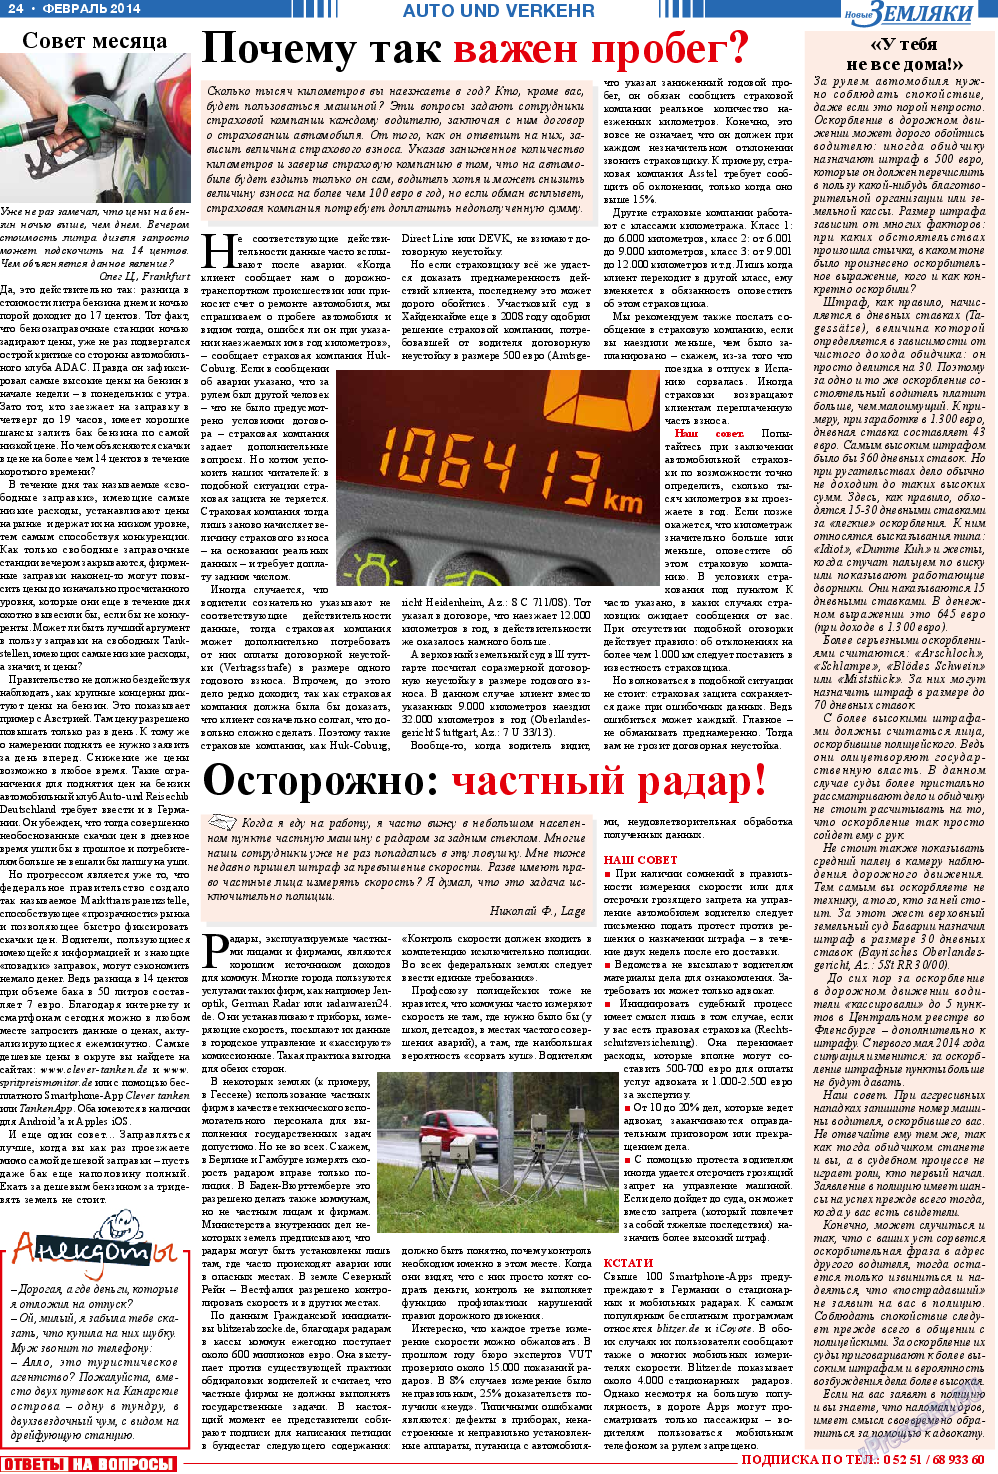 Новые Земляки (газета). 2014 год, номер 2, стр. 24